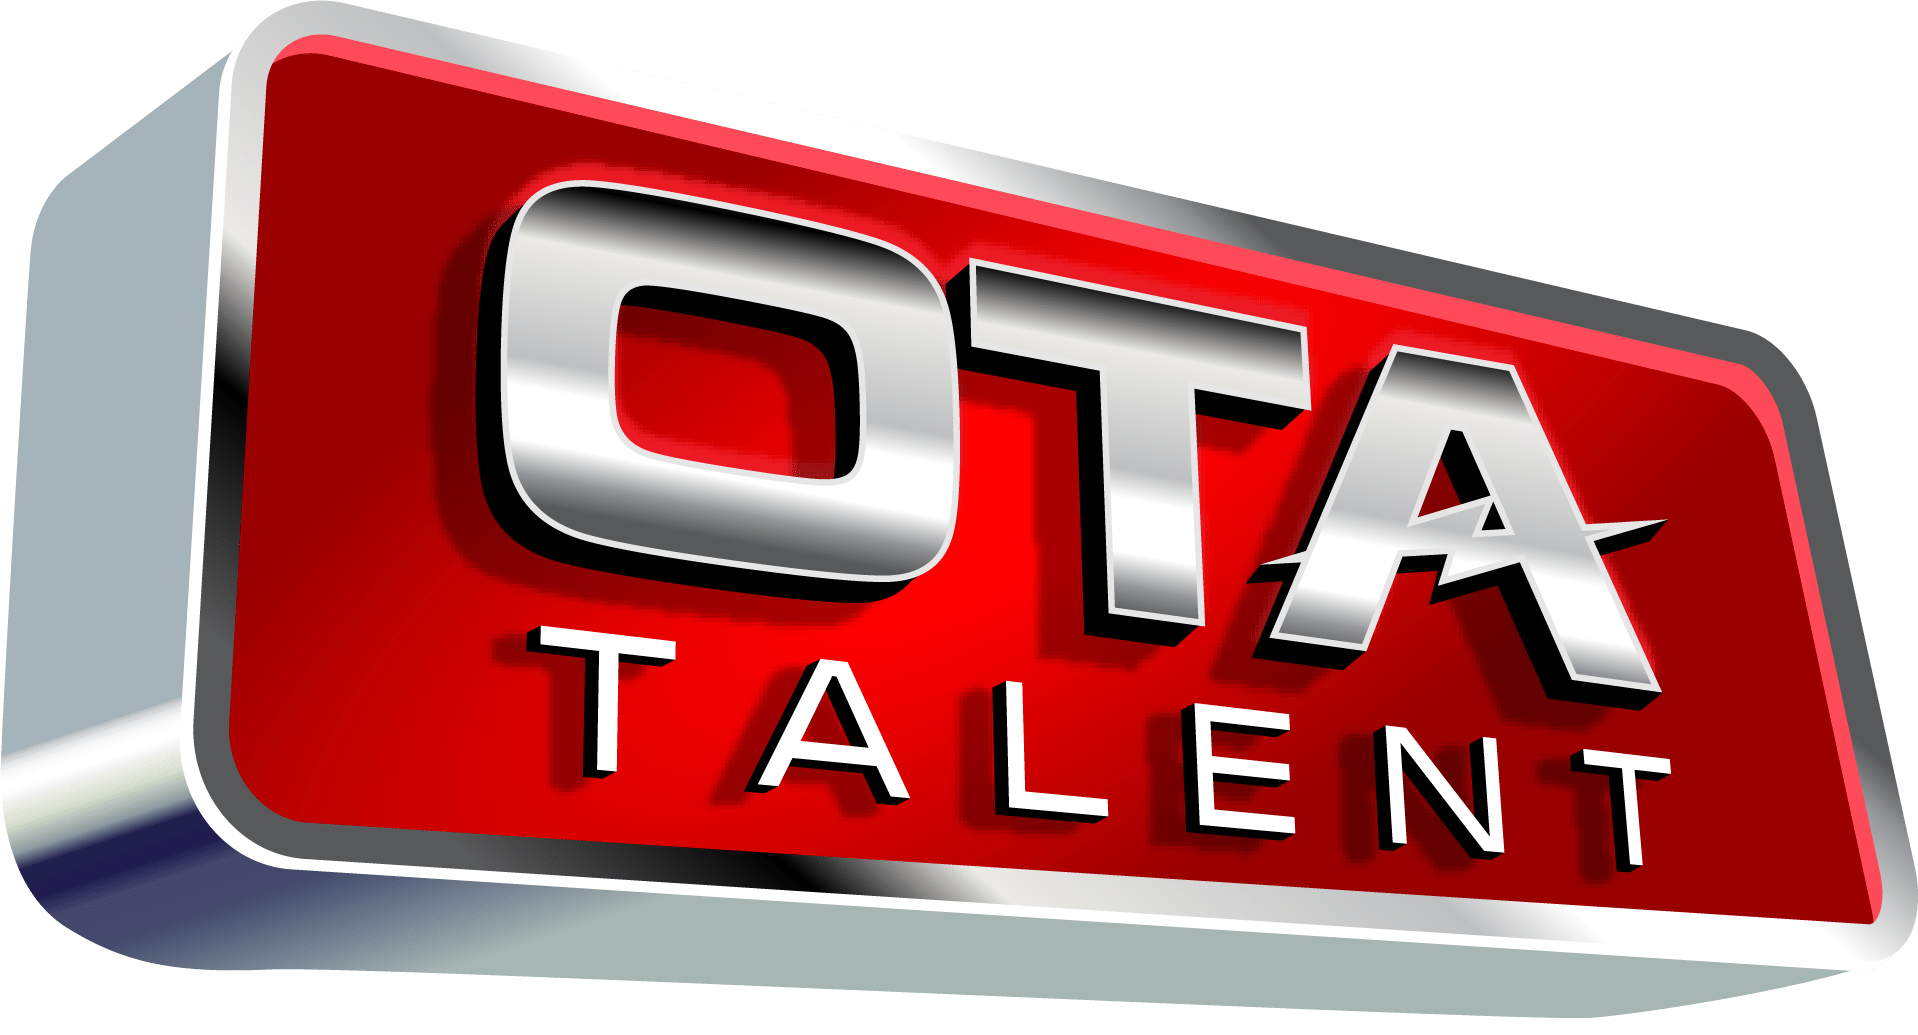 OTA Talent Final Logo - twist